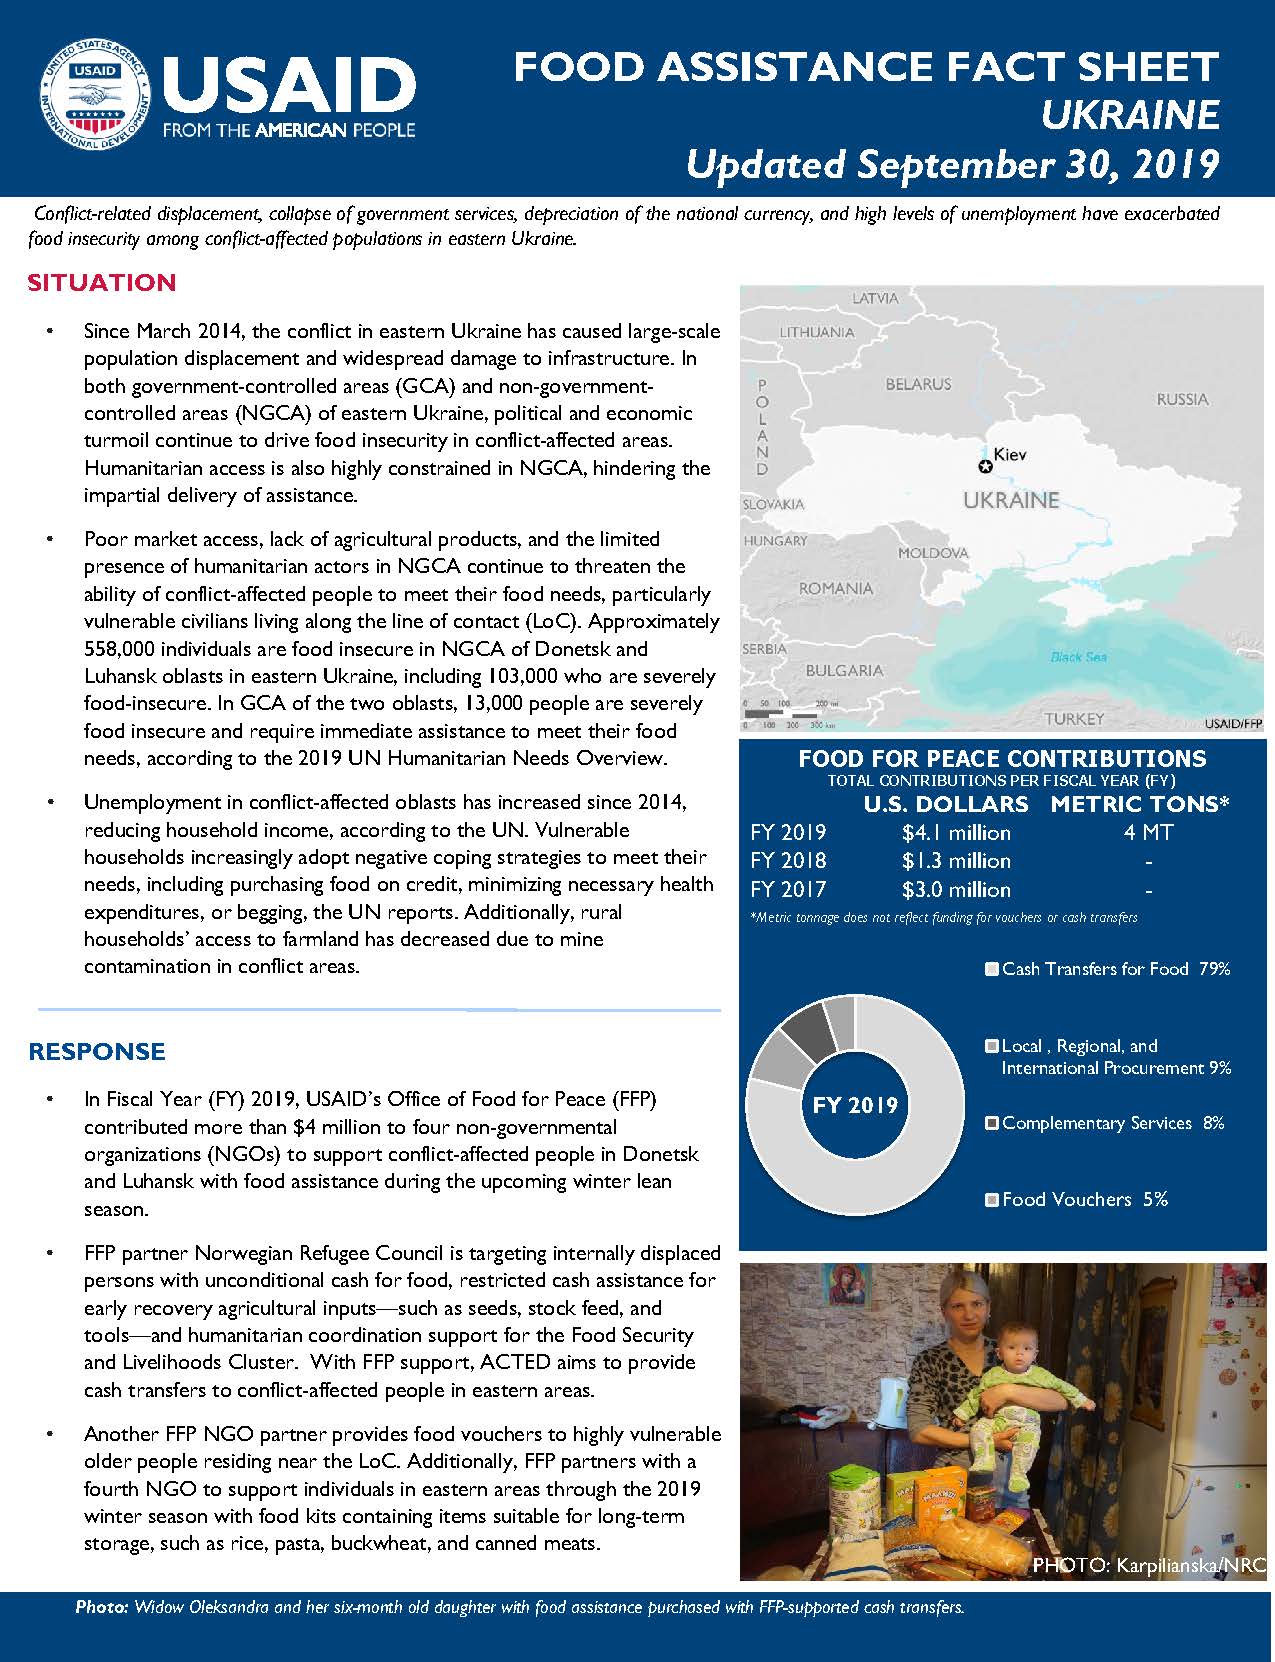 Food Assistance Fact Sheet - Ukraine